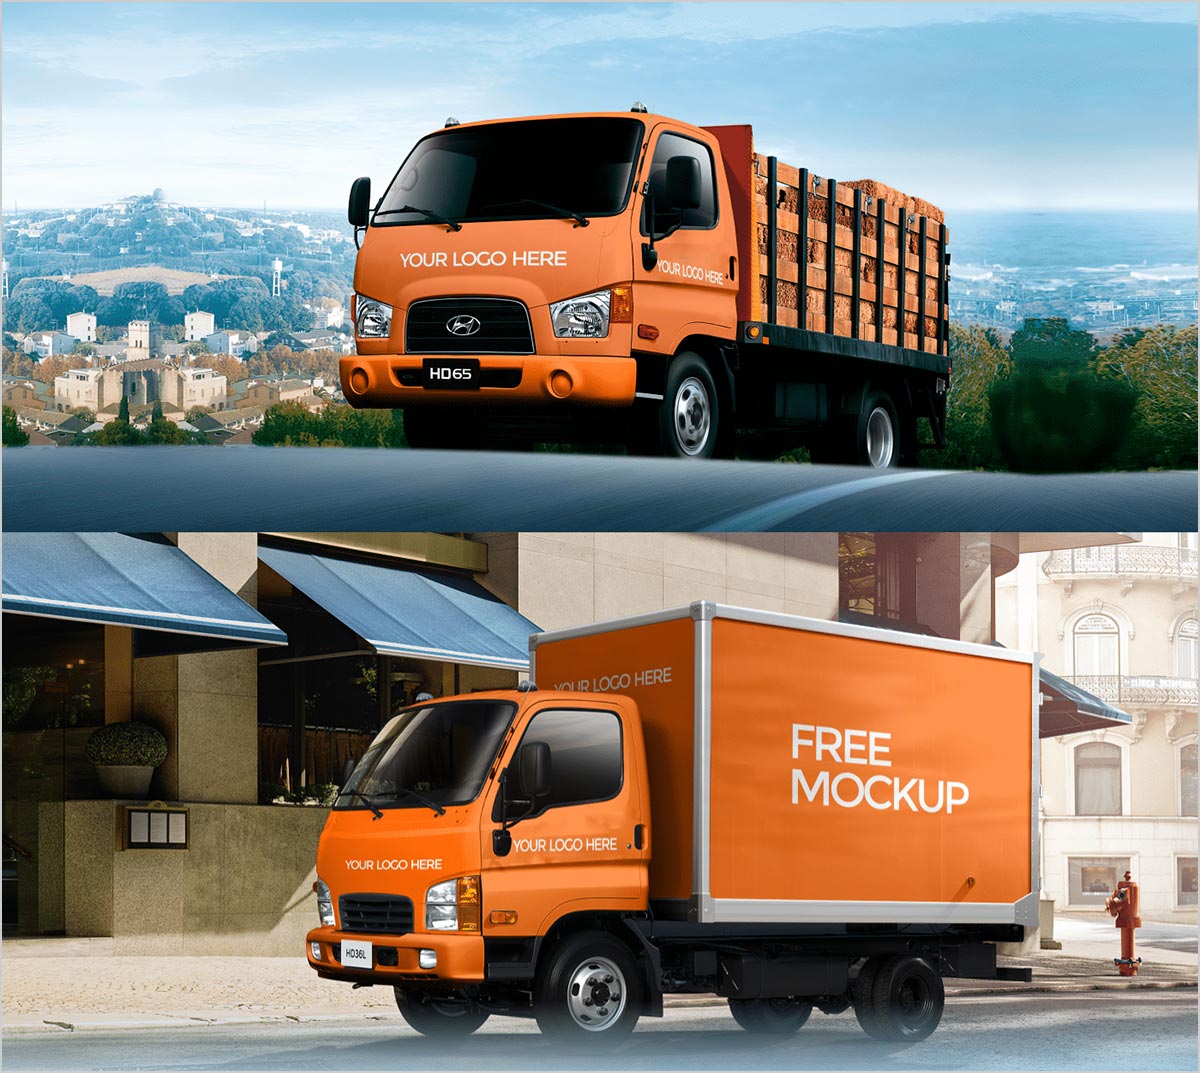 2-Truck-Free-Mockup-PSD